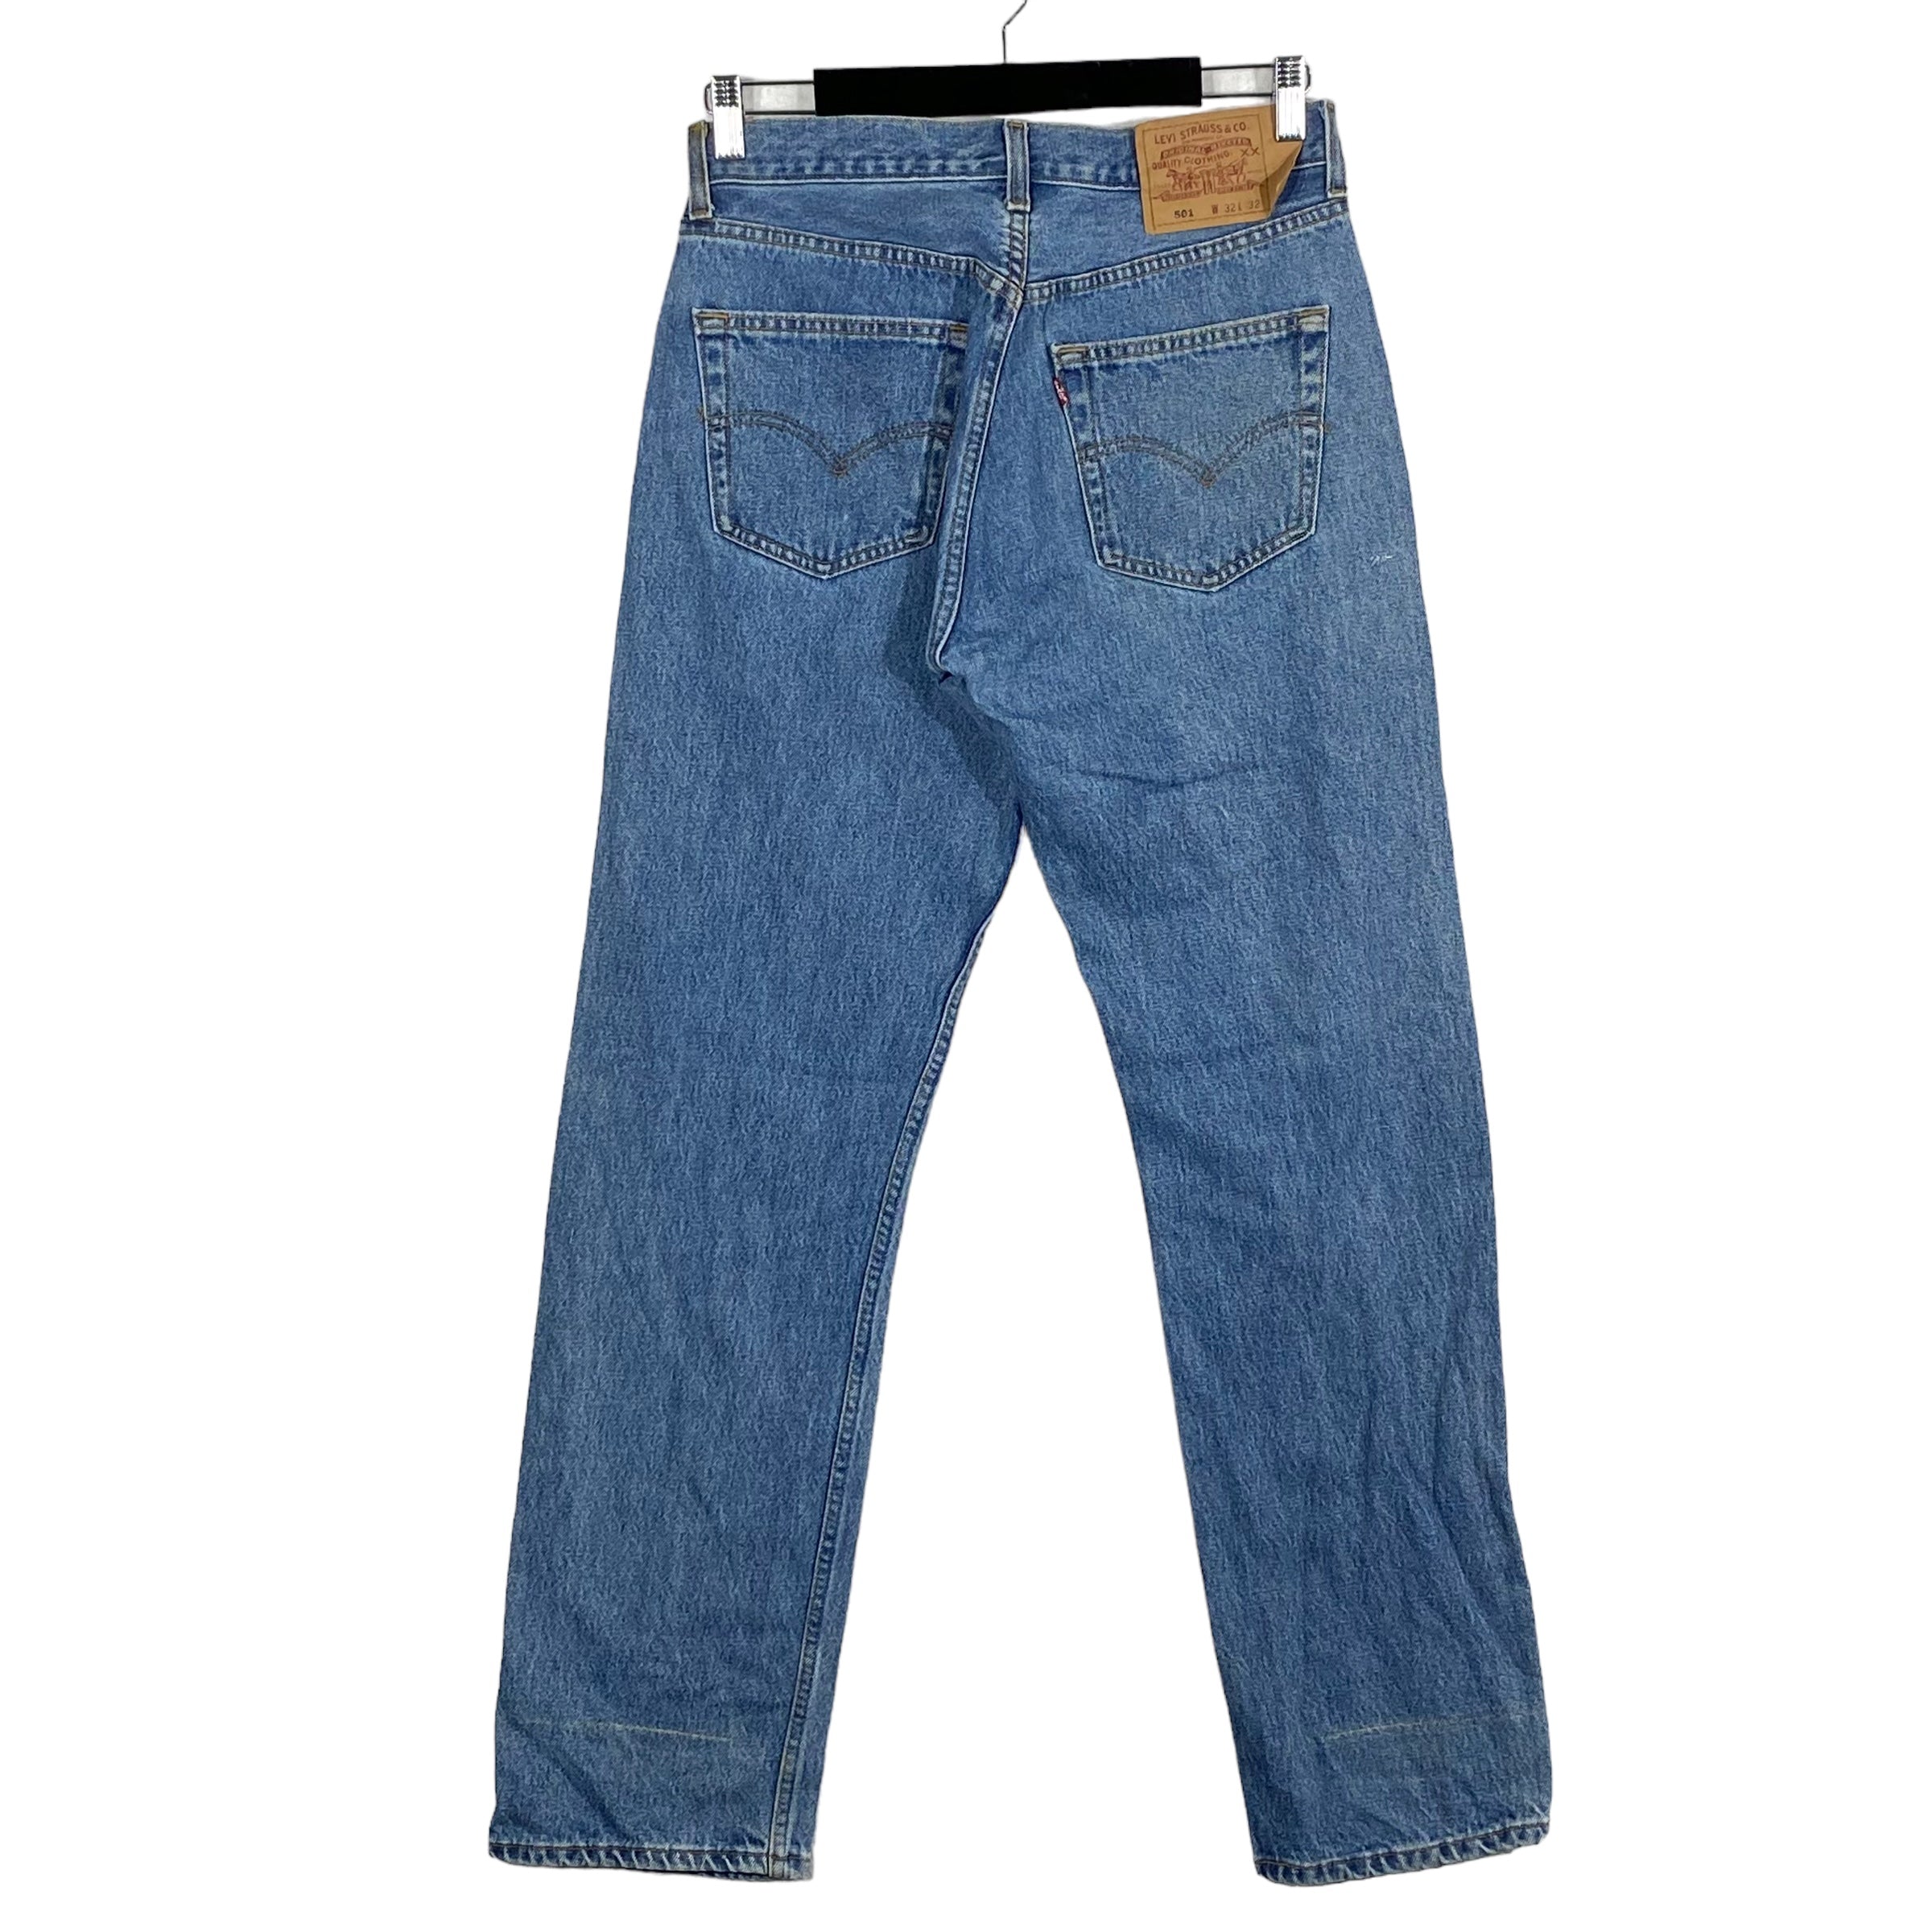 Vintage Levi's 501 Denim Jeans 90s